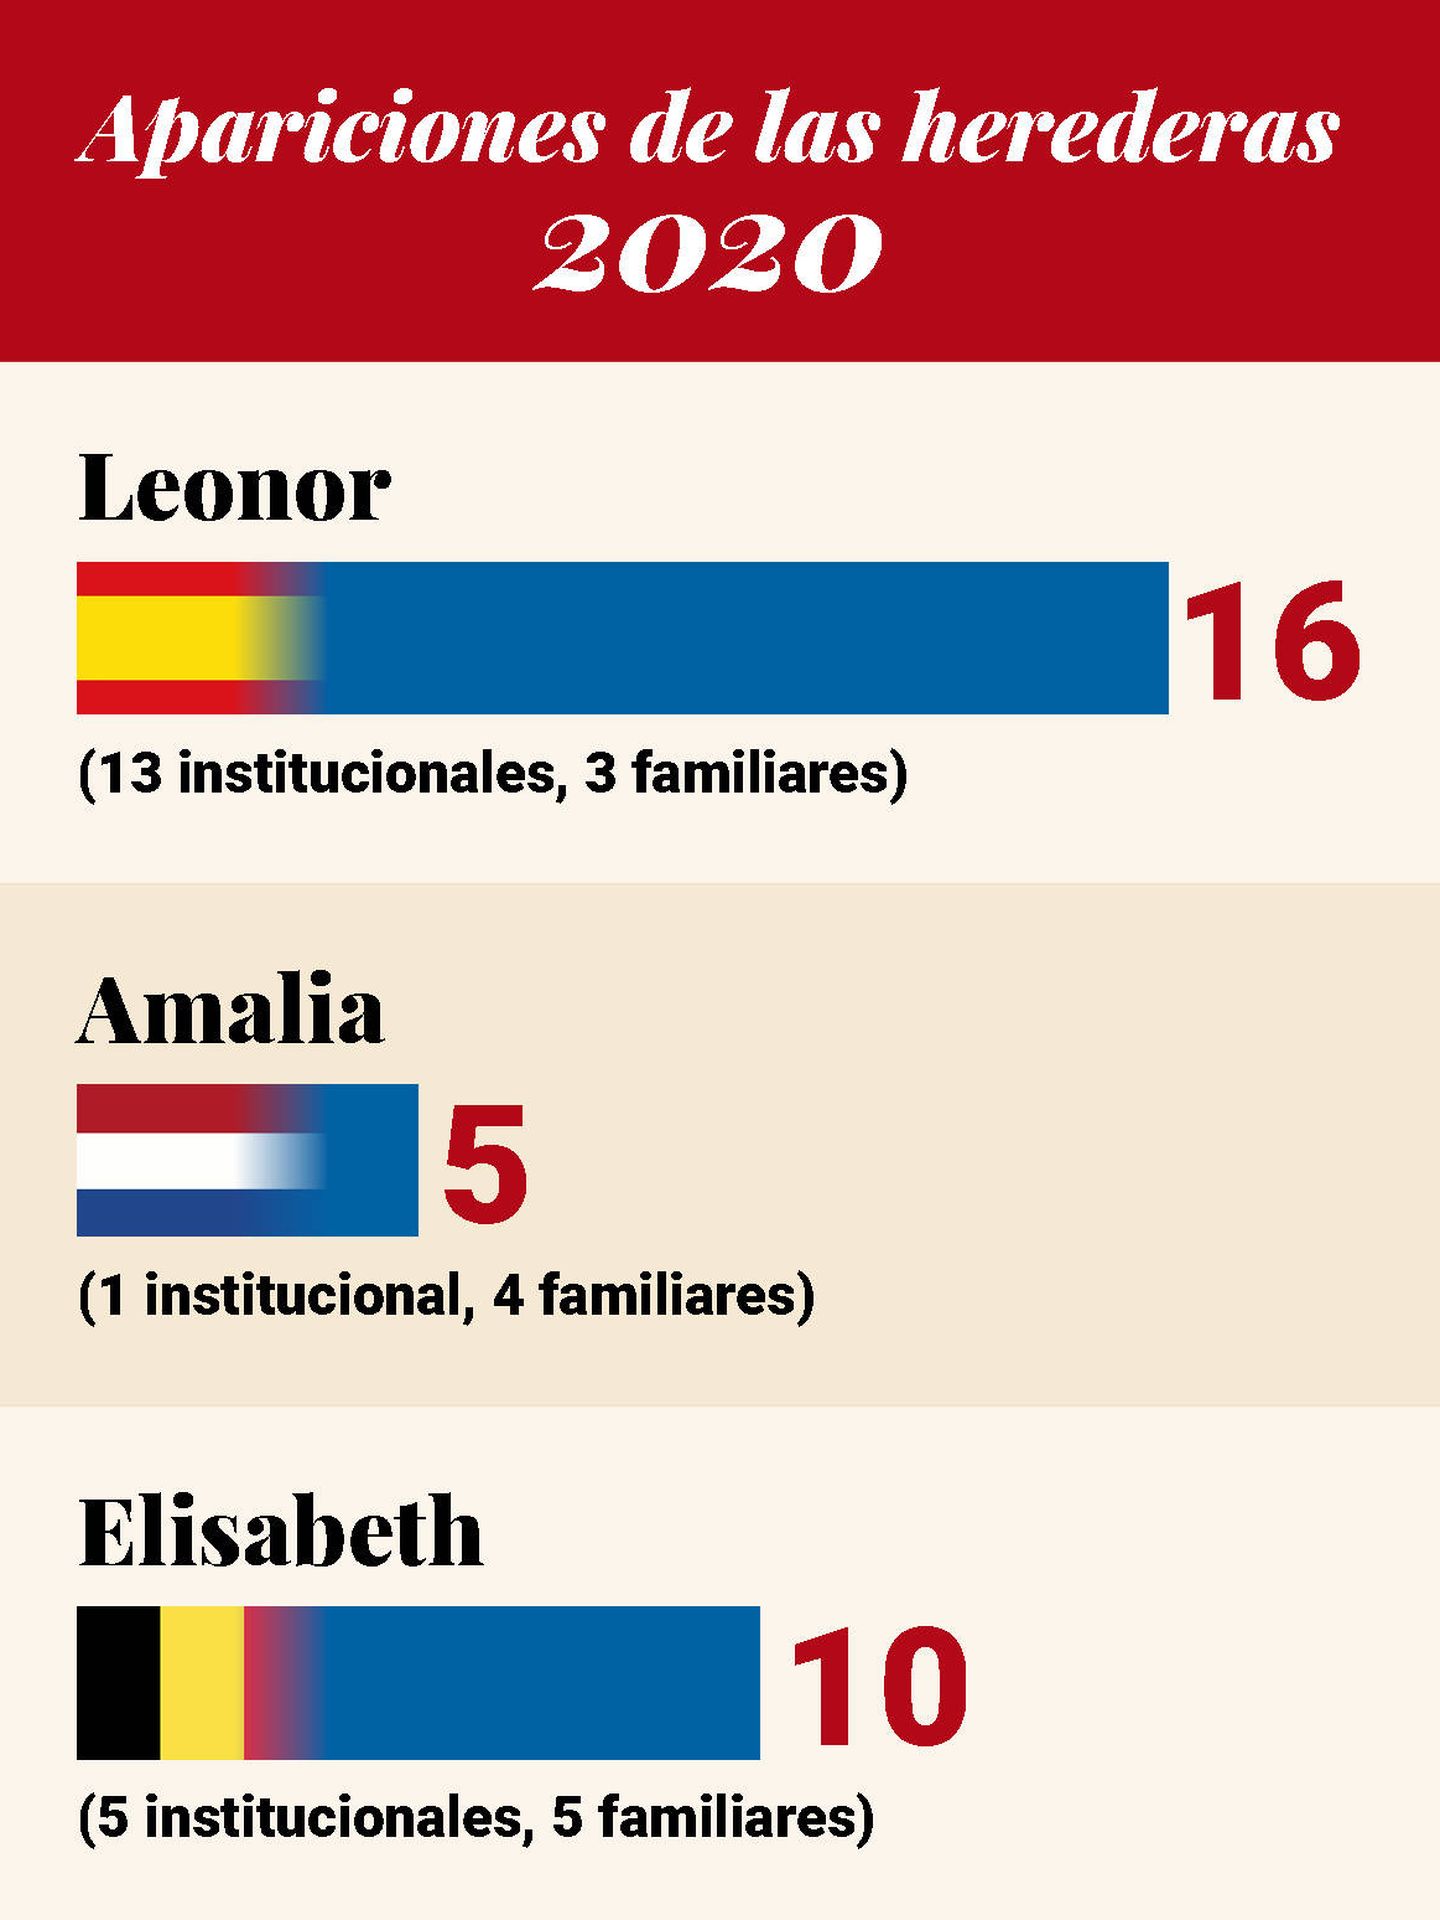  Apariciones de Leonor, Amalia y Elisabeth en 2020. (Vanitatis)